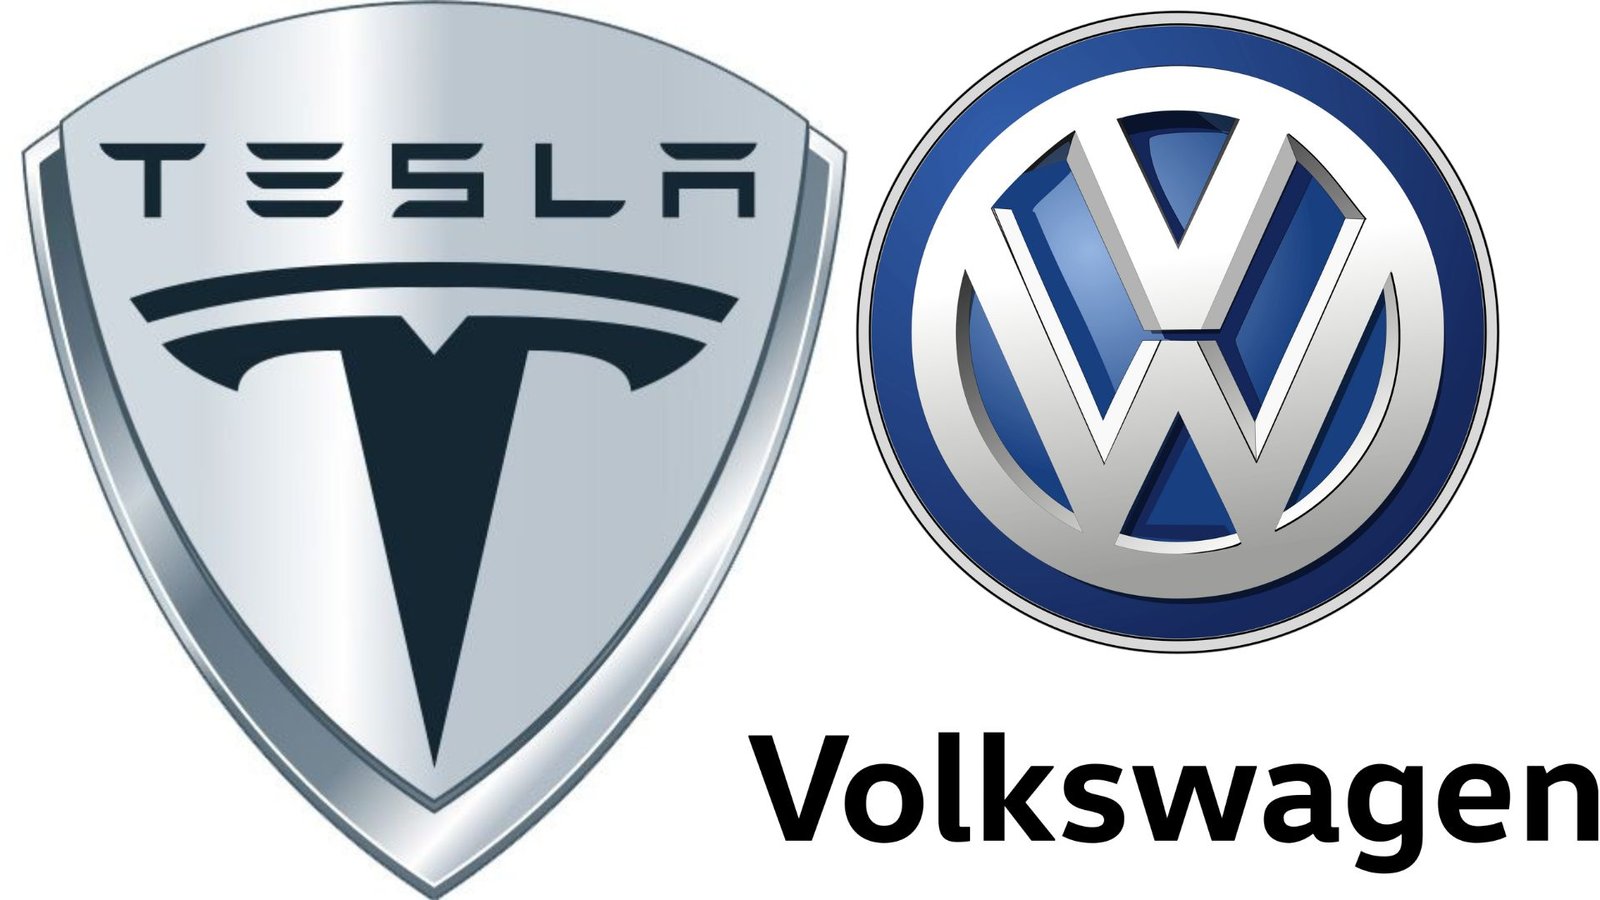 Volkswagen's departure